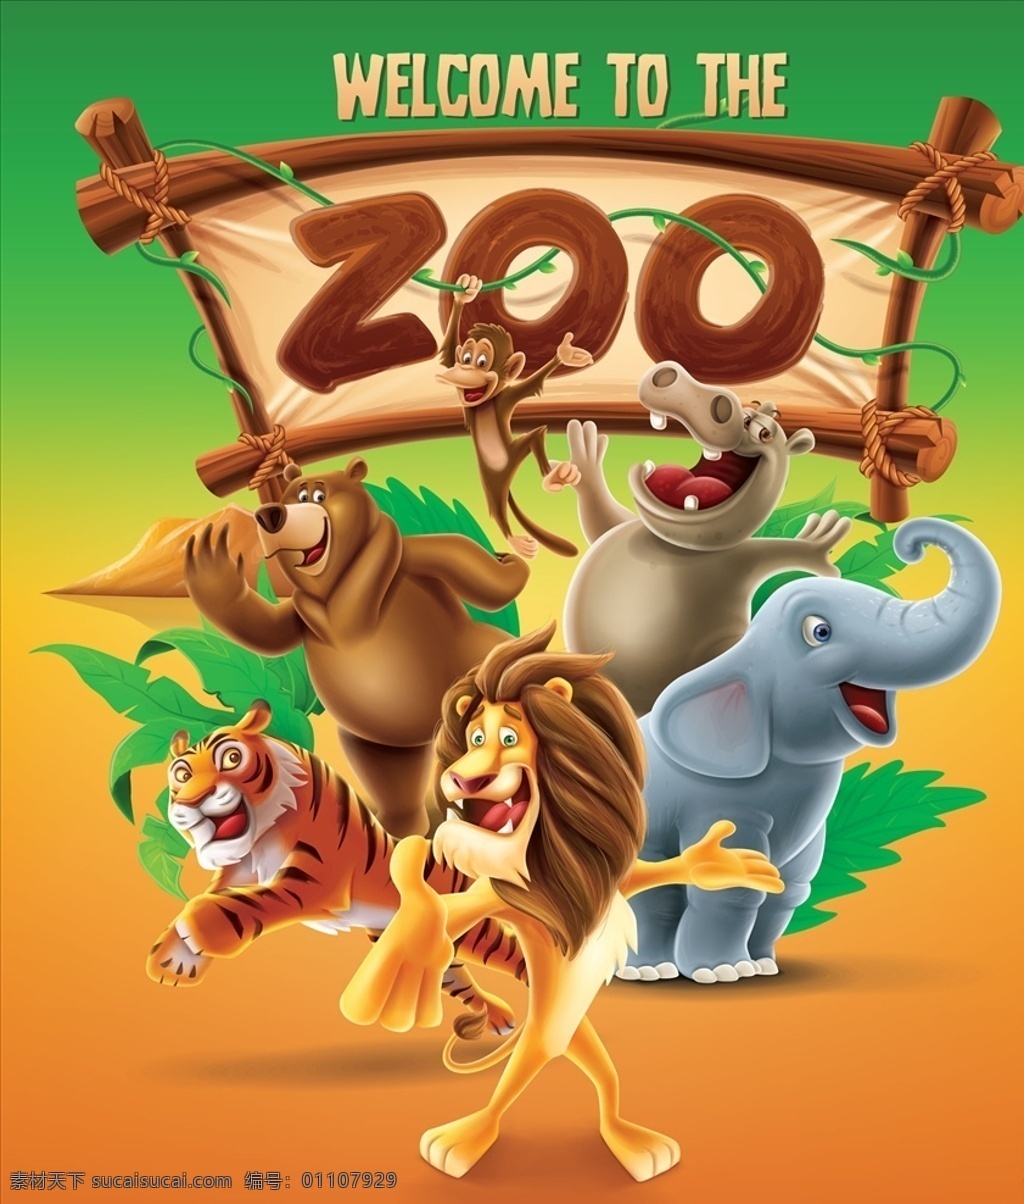 卡通 动物园 海报 卡通动物园 卡通动物海报 动物园海报 卡通狮子 卡通老虎 卡通熊 卡通大象 卡通河马 共享设计矢量 动漫动画